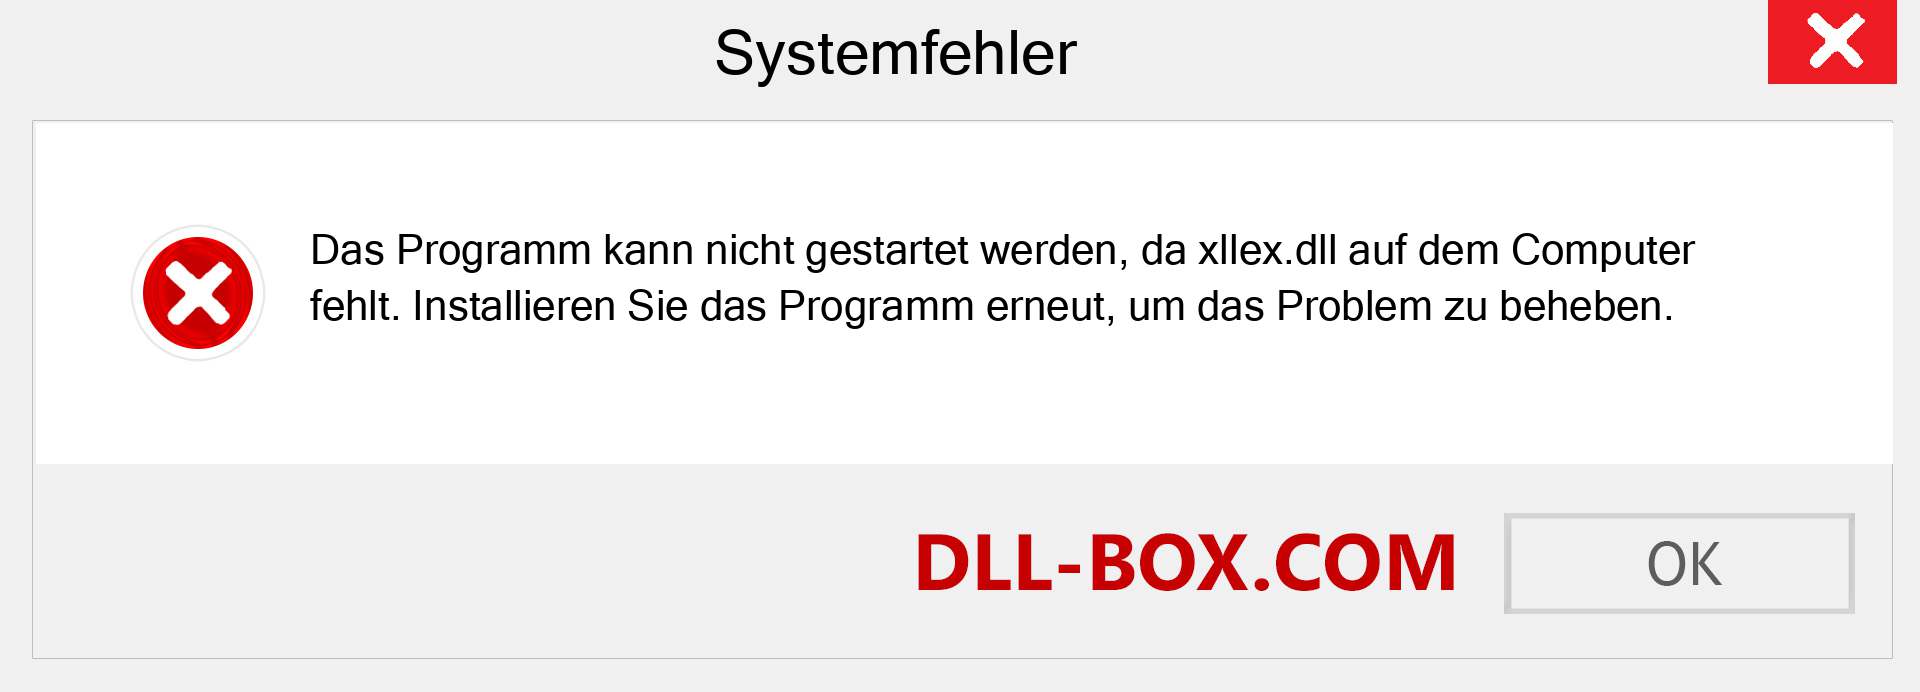 xllex.dll-Datei fehlt?. Download für Windows 7, 8, 10 - Fix xllex dll Missing Error unter Windows, Fotos, Bildern